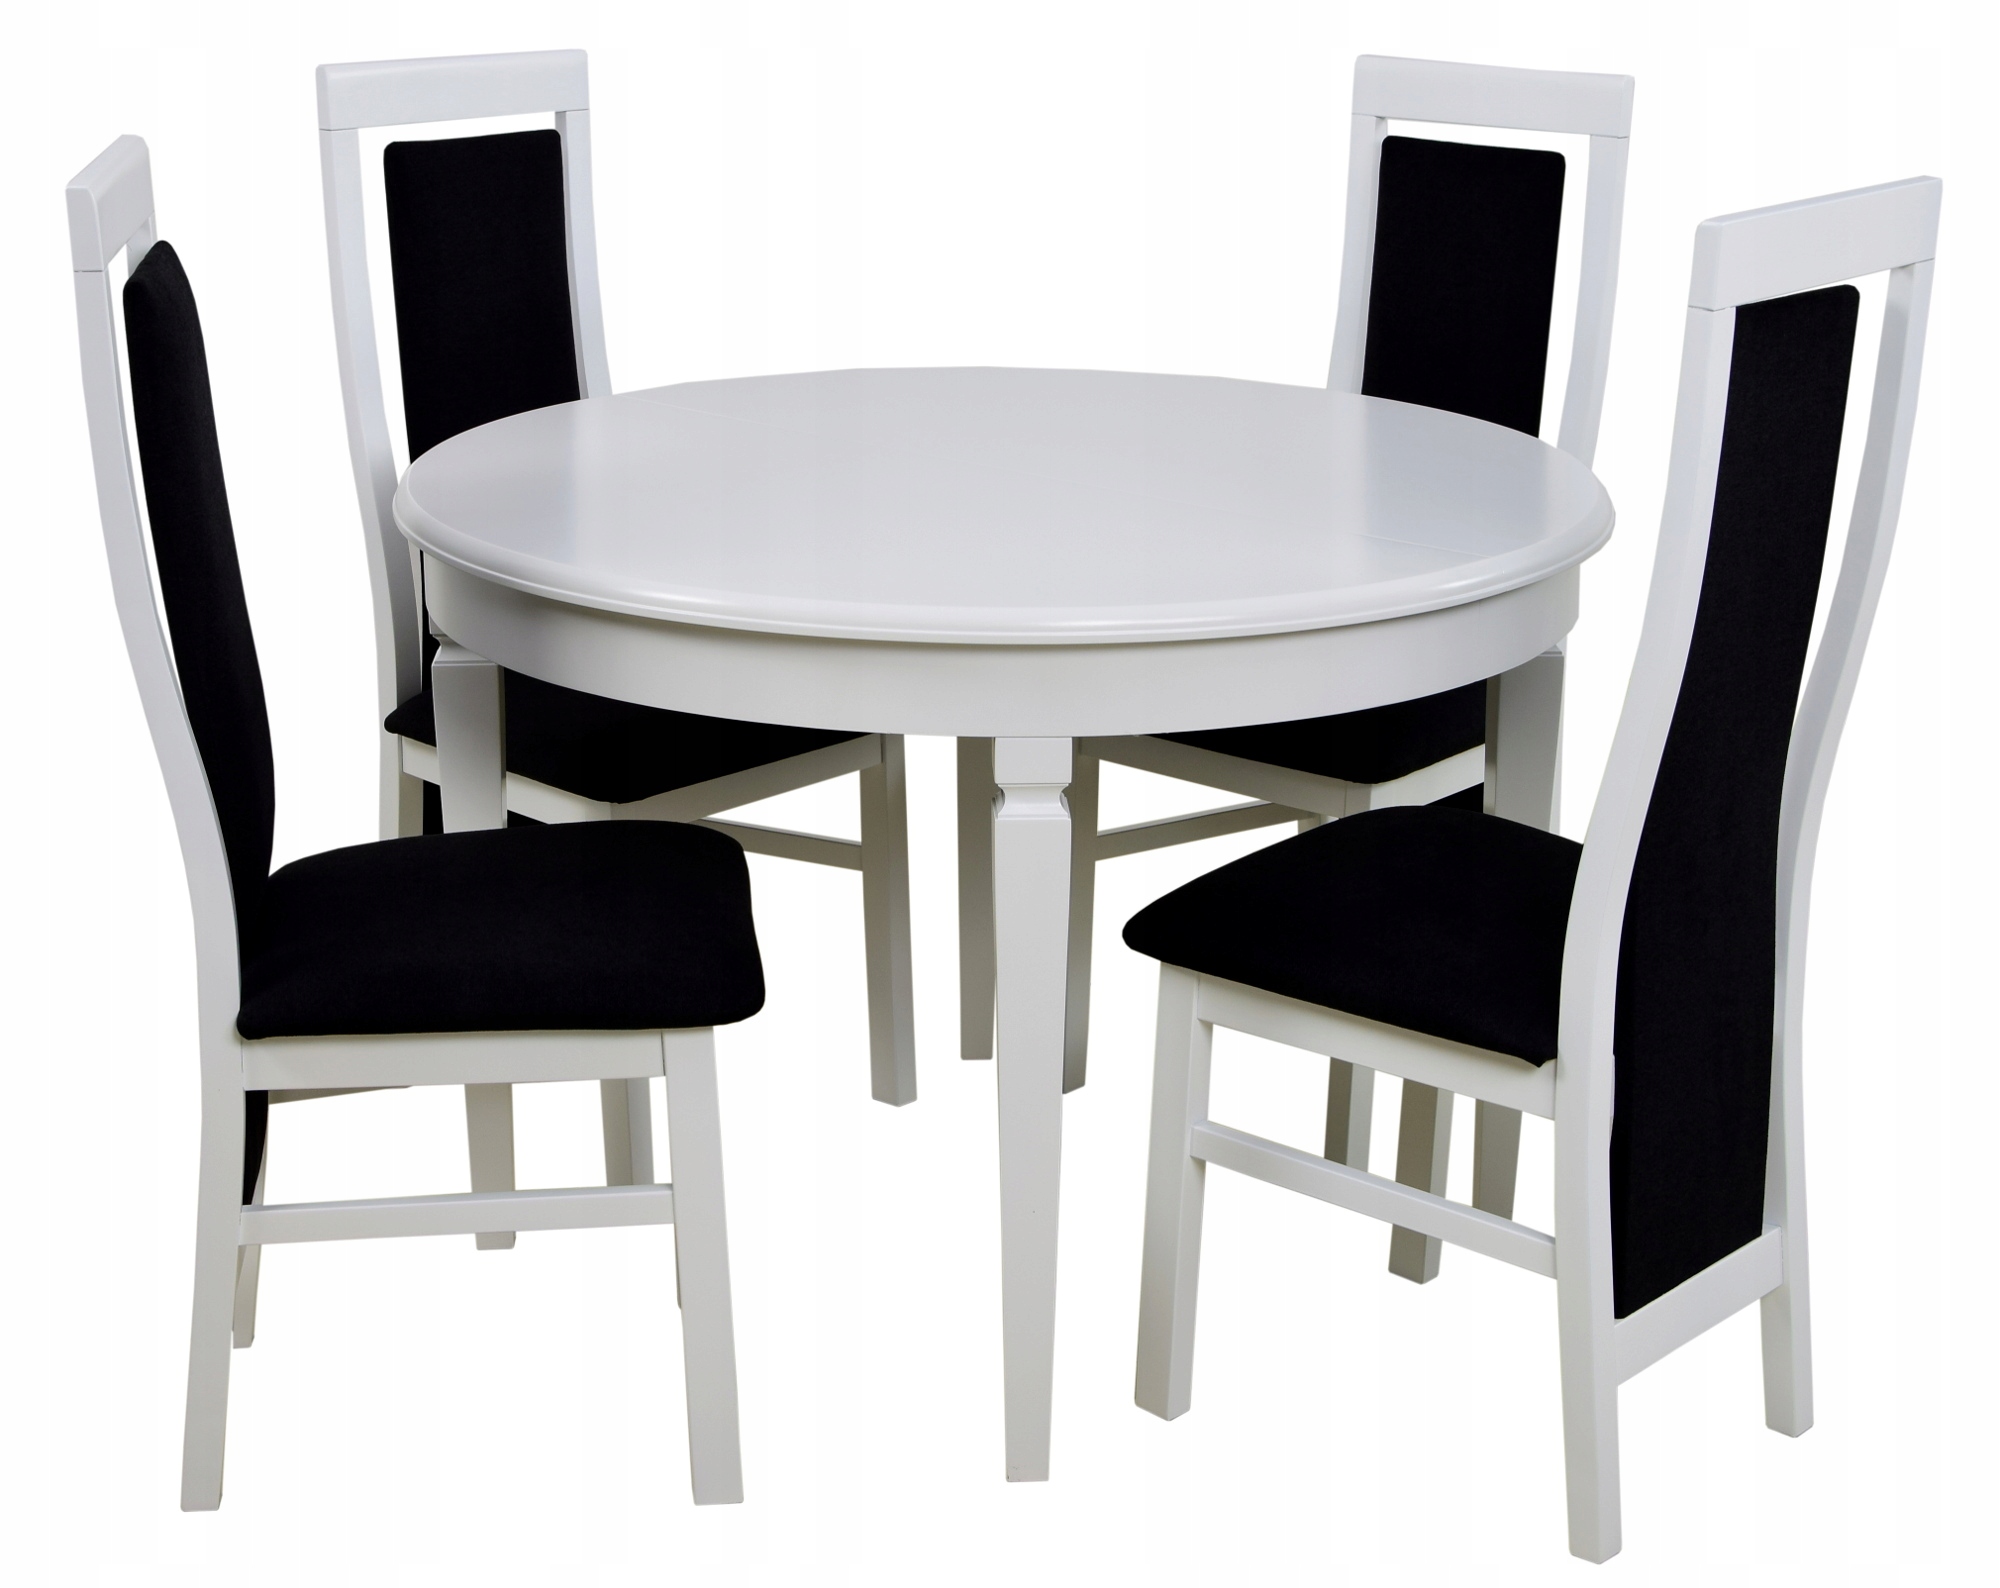 Стулья для кухни комплект 2 шт. Круглый стол Carmelo раздвижной + 4 стула Oklahoma. Круглый белый стол со стульями на кухню. Белый стол и стулья для кухни. Кухонные круглые белые столы и стулья.